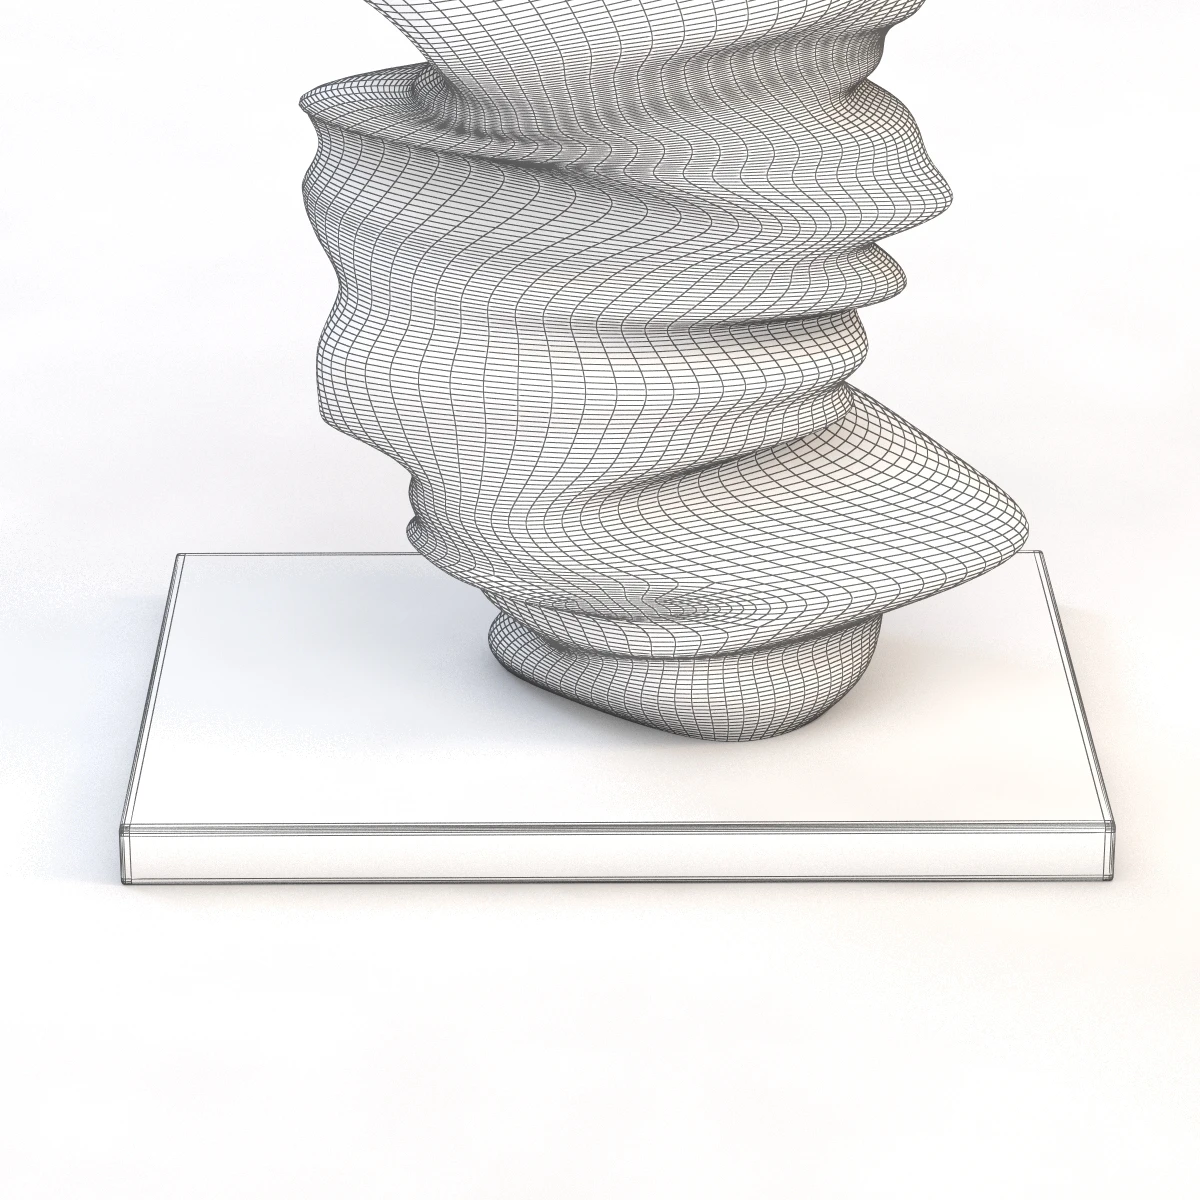 Level Head Sculpture By Tony Cragg 3D Model_010